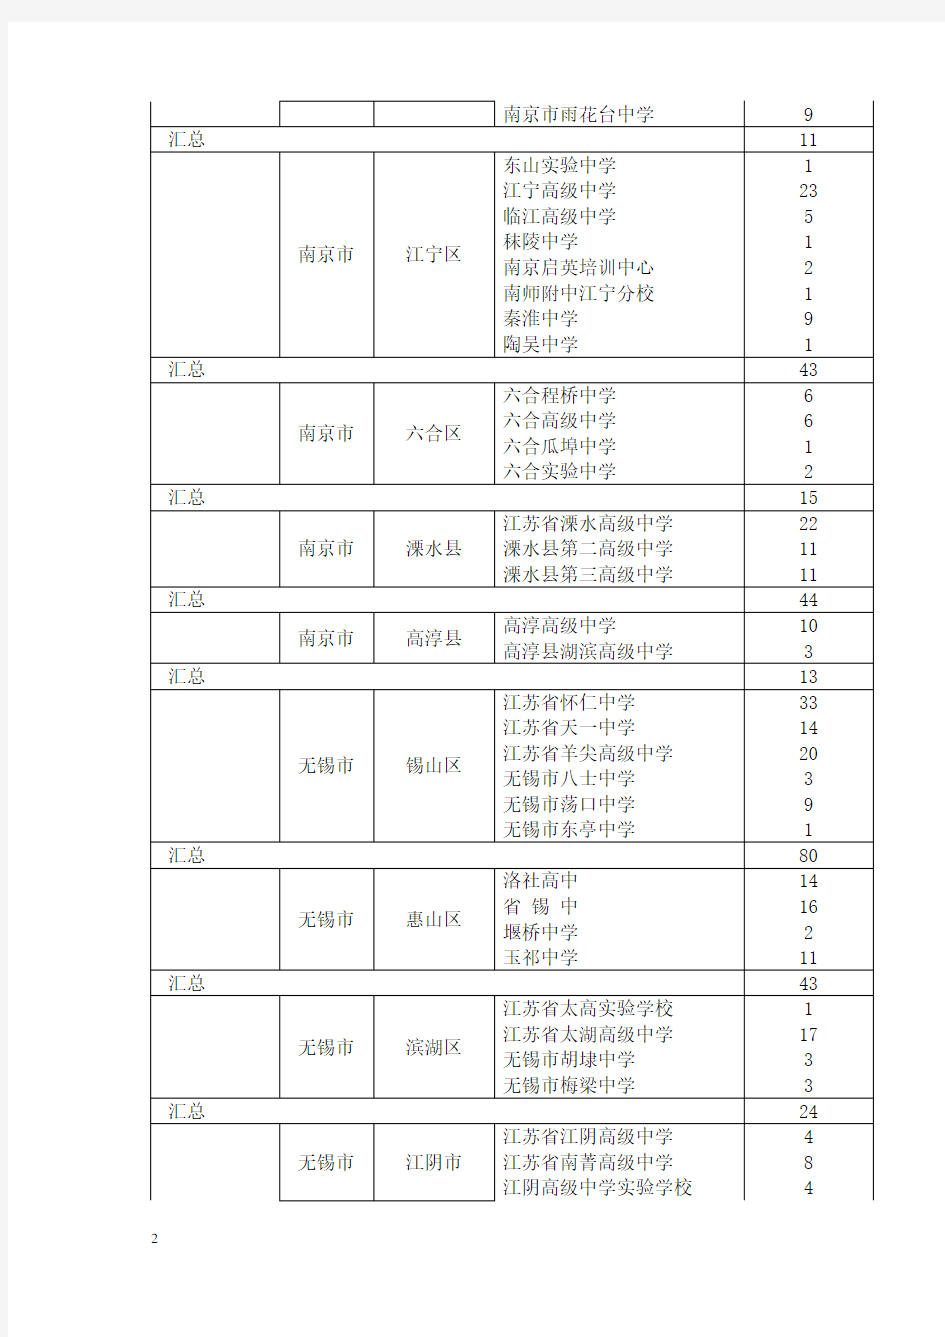 2008年我校录取江苏省考生中学分布一览表范文